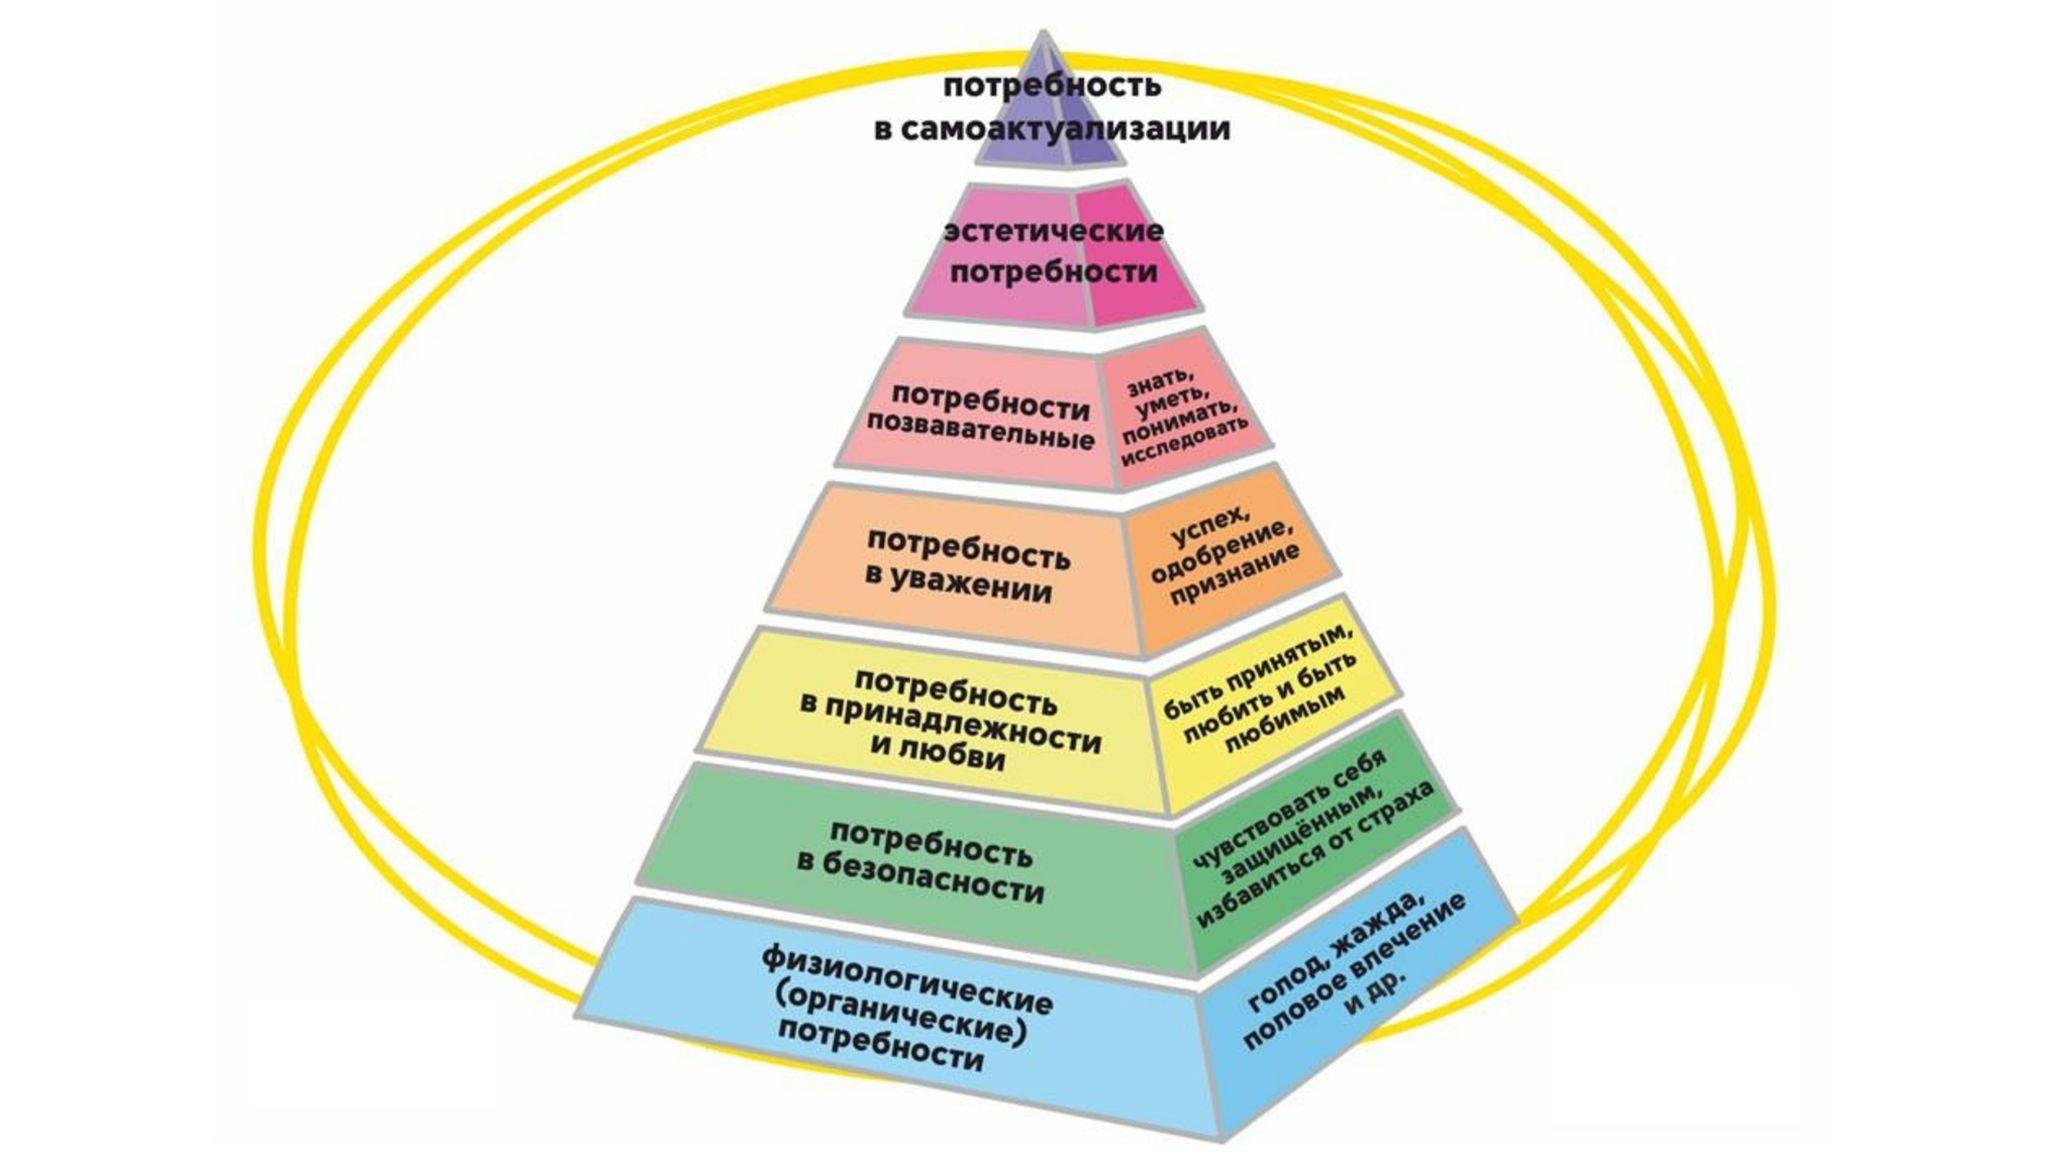 Удовлетворение основных жизненных потребностей. Семь уровней пирамиды Маслоу. Пирамида развития личности Маслоу. Базовые потребности человека по пирамиде Маслоу. Пирамида Маслоу 7 уровней безопасности.